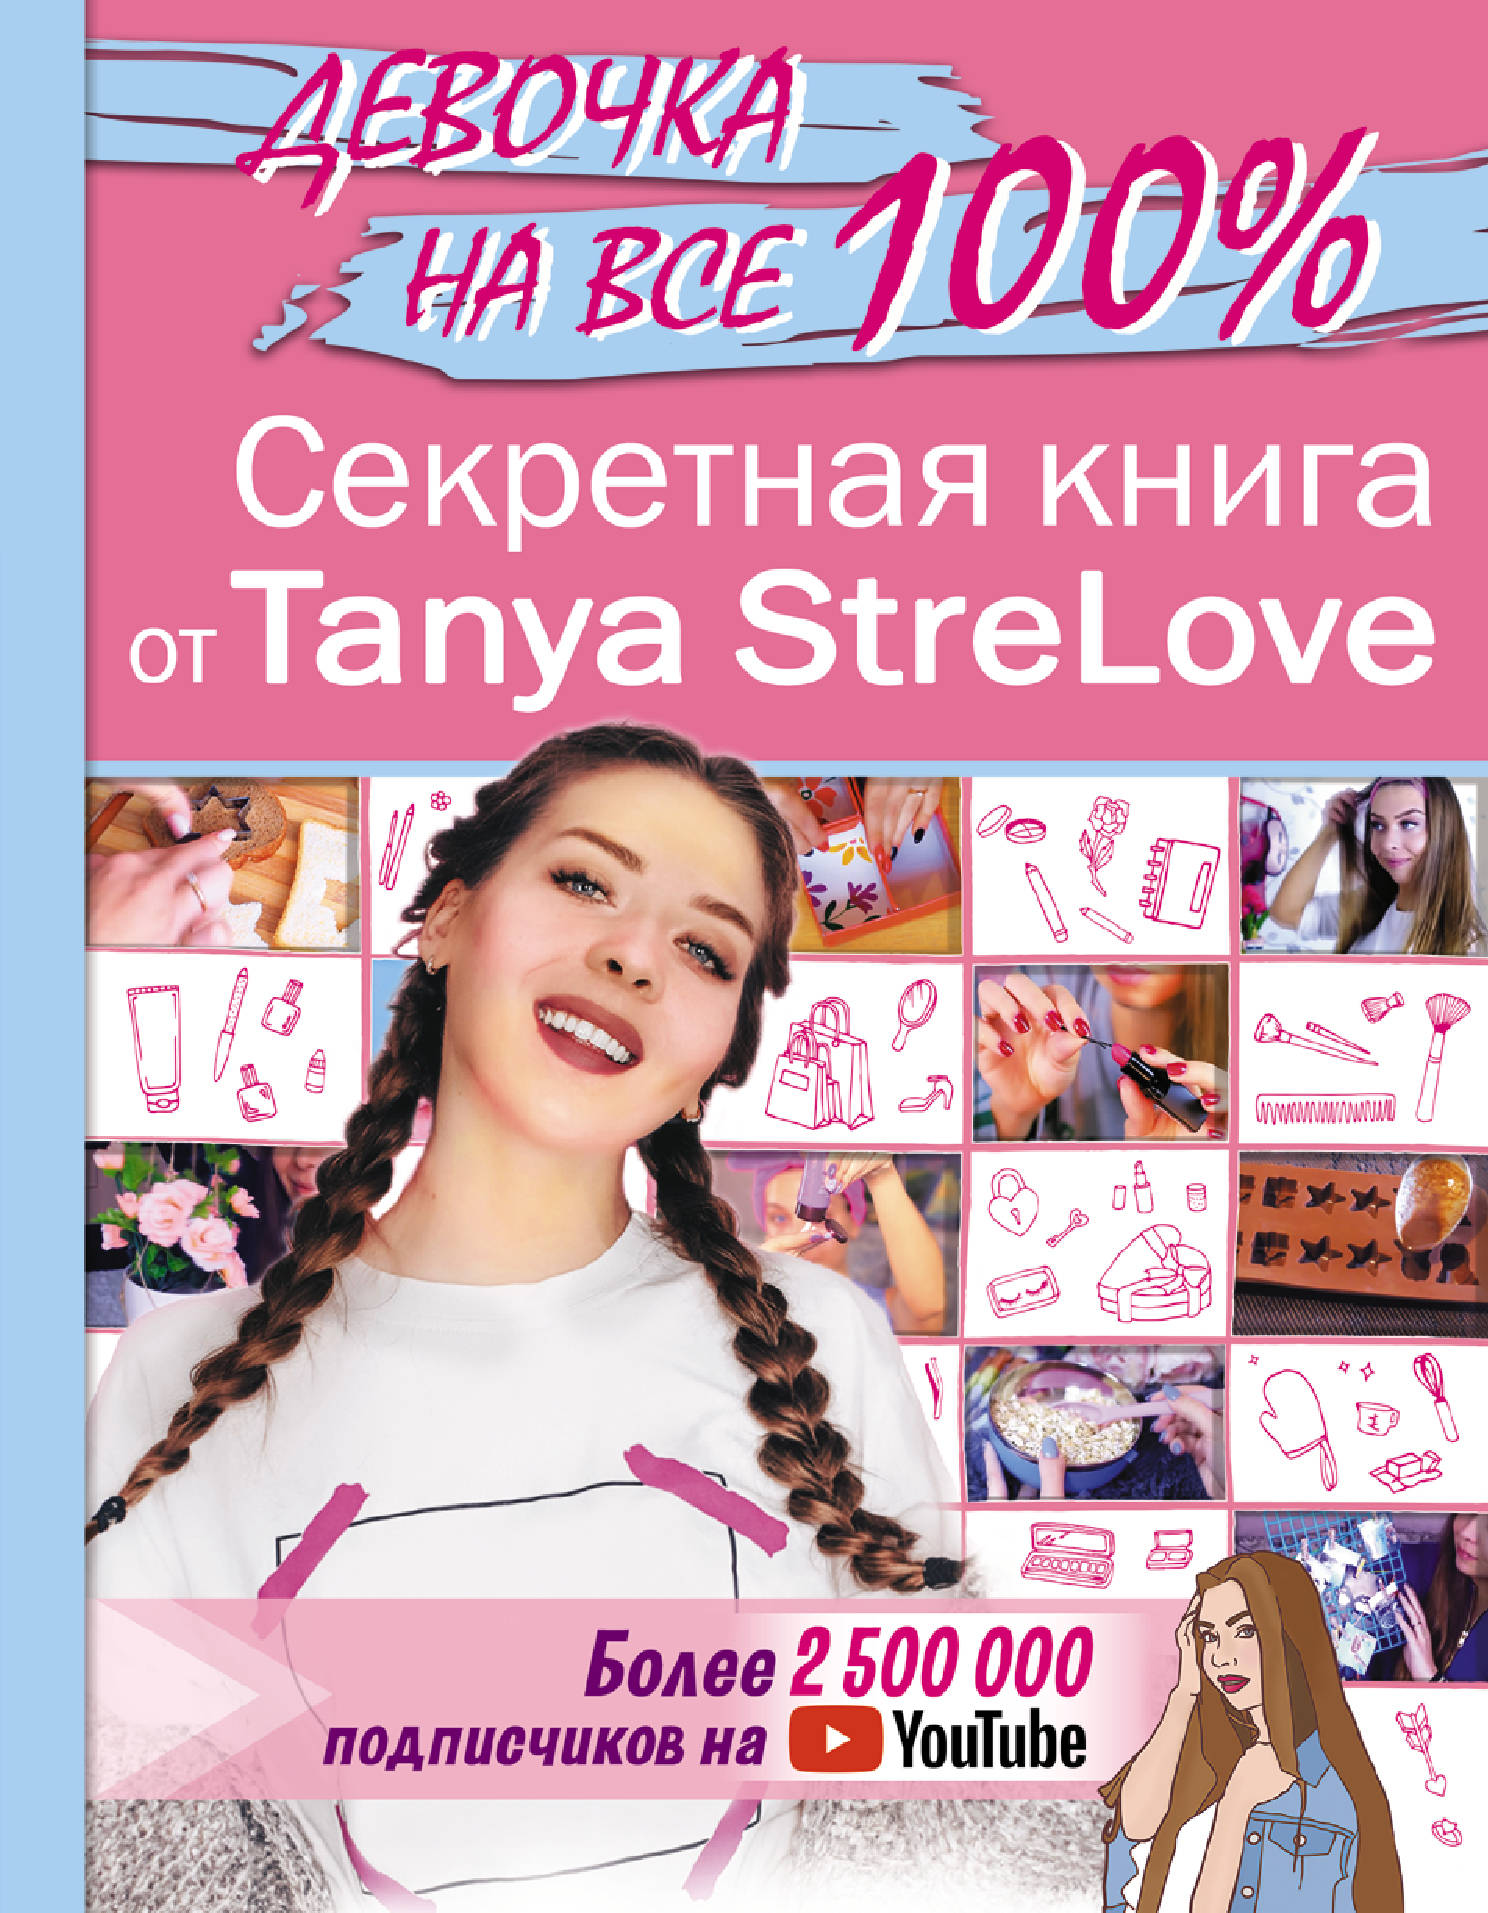      Tanya StreLove